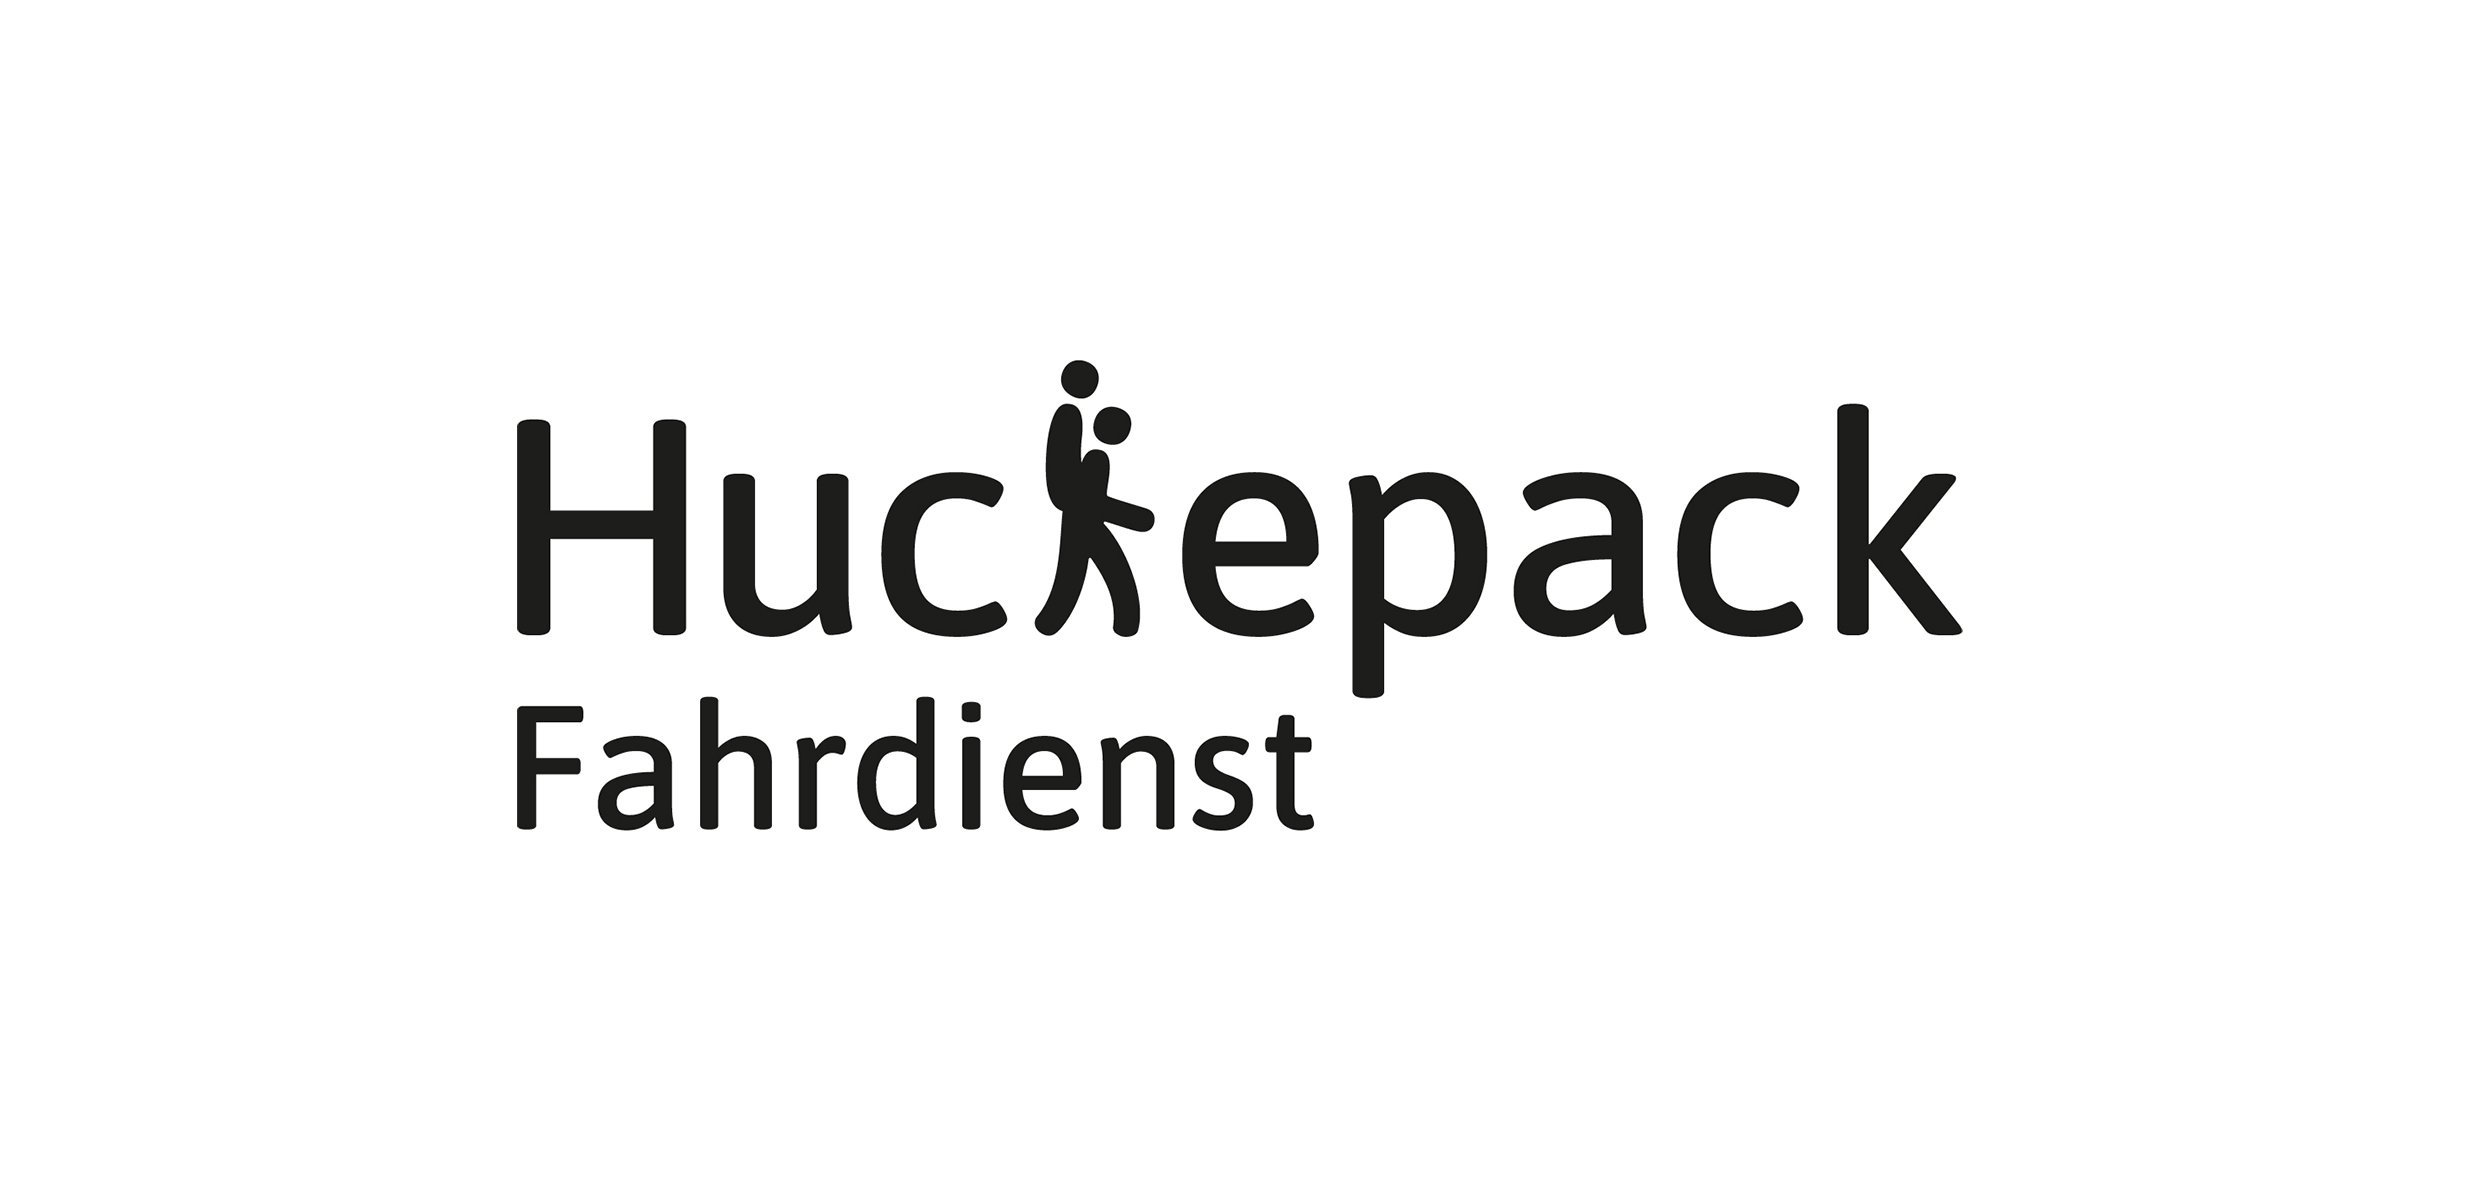 01 32 Huckepack Referenz Spitzbub